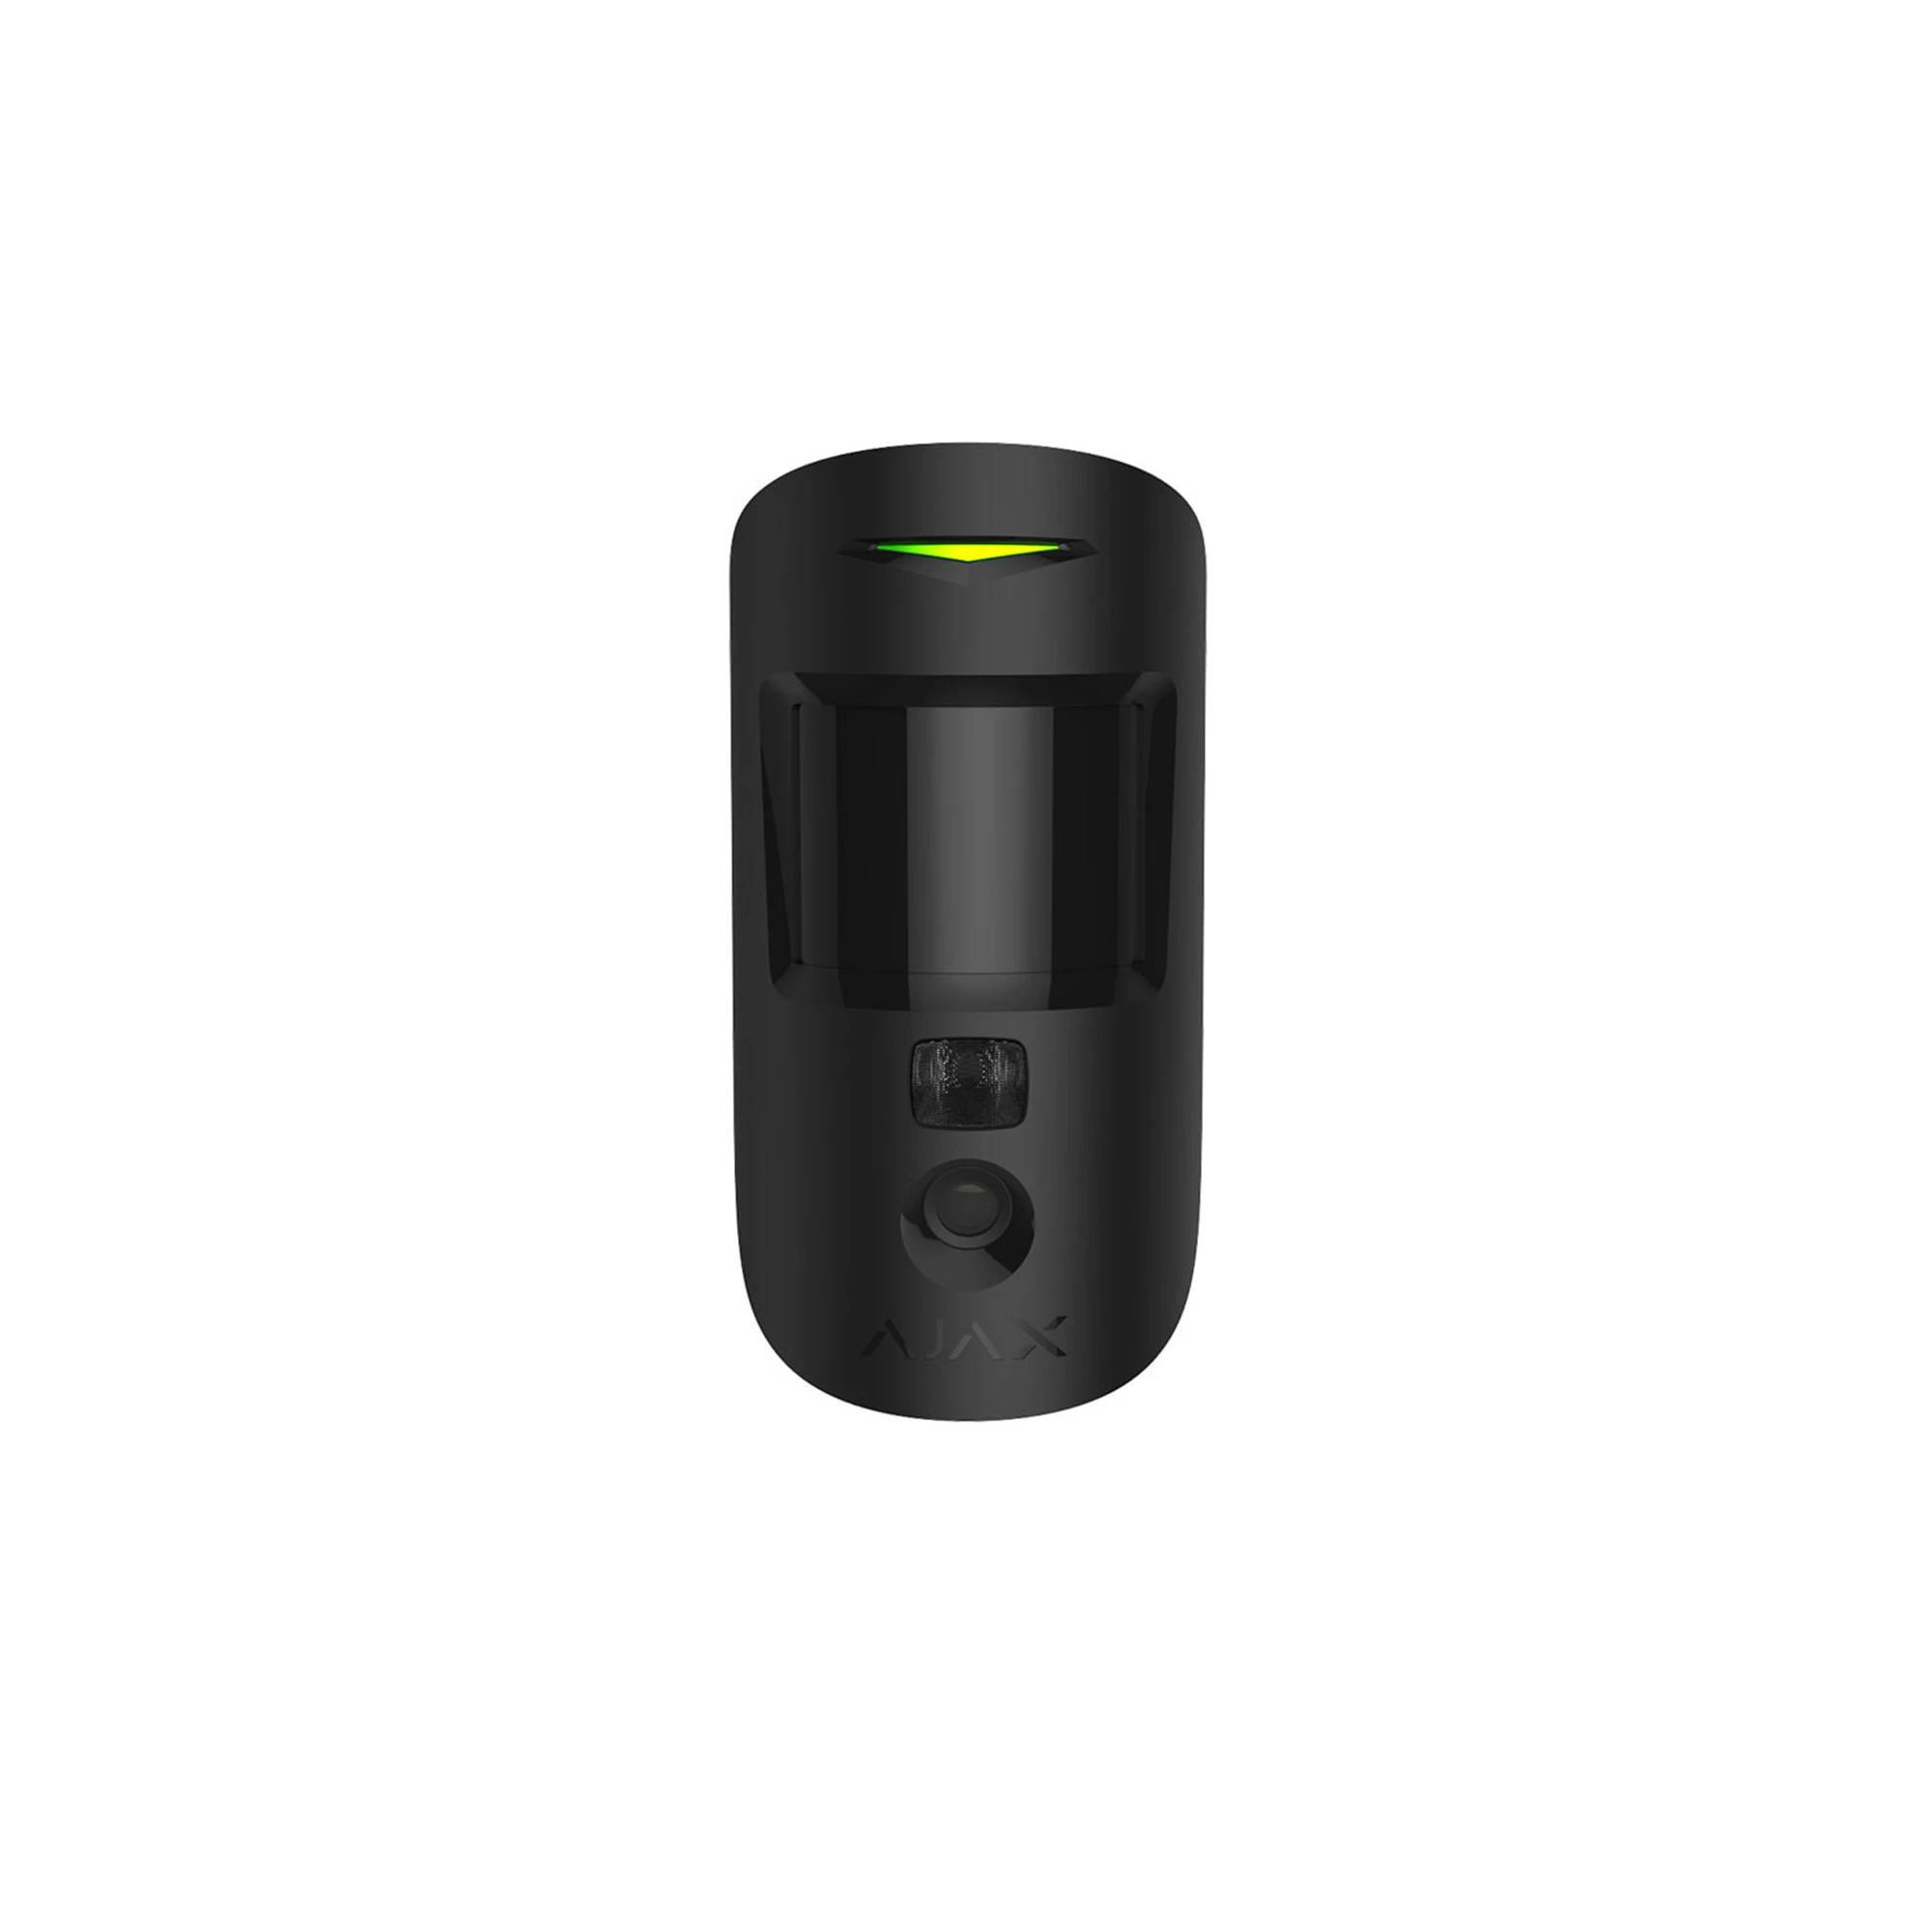 Ajax MotionCam PhOD Black – беспроводной датчик движения с фотофиксацией по тревоге и по запросу